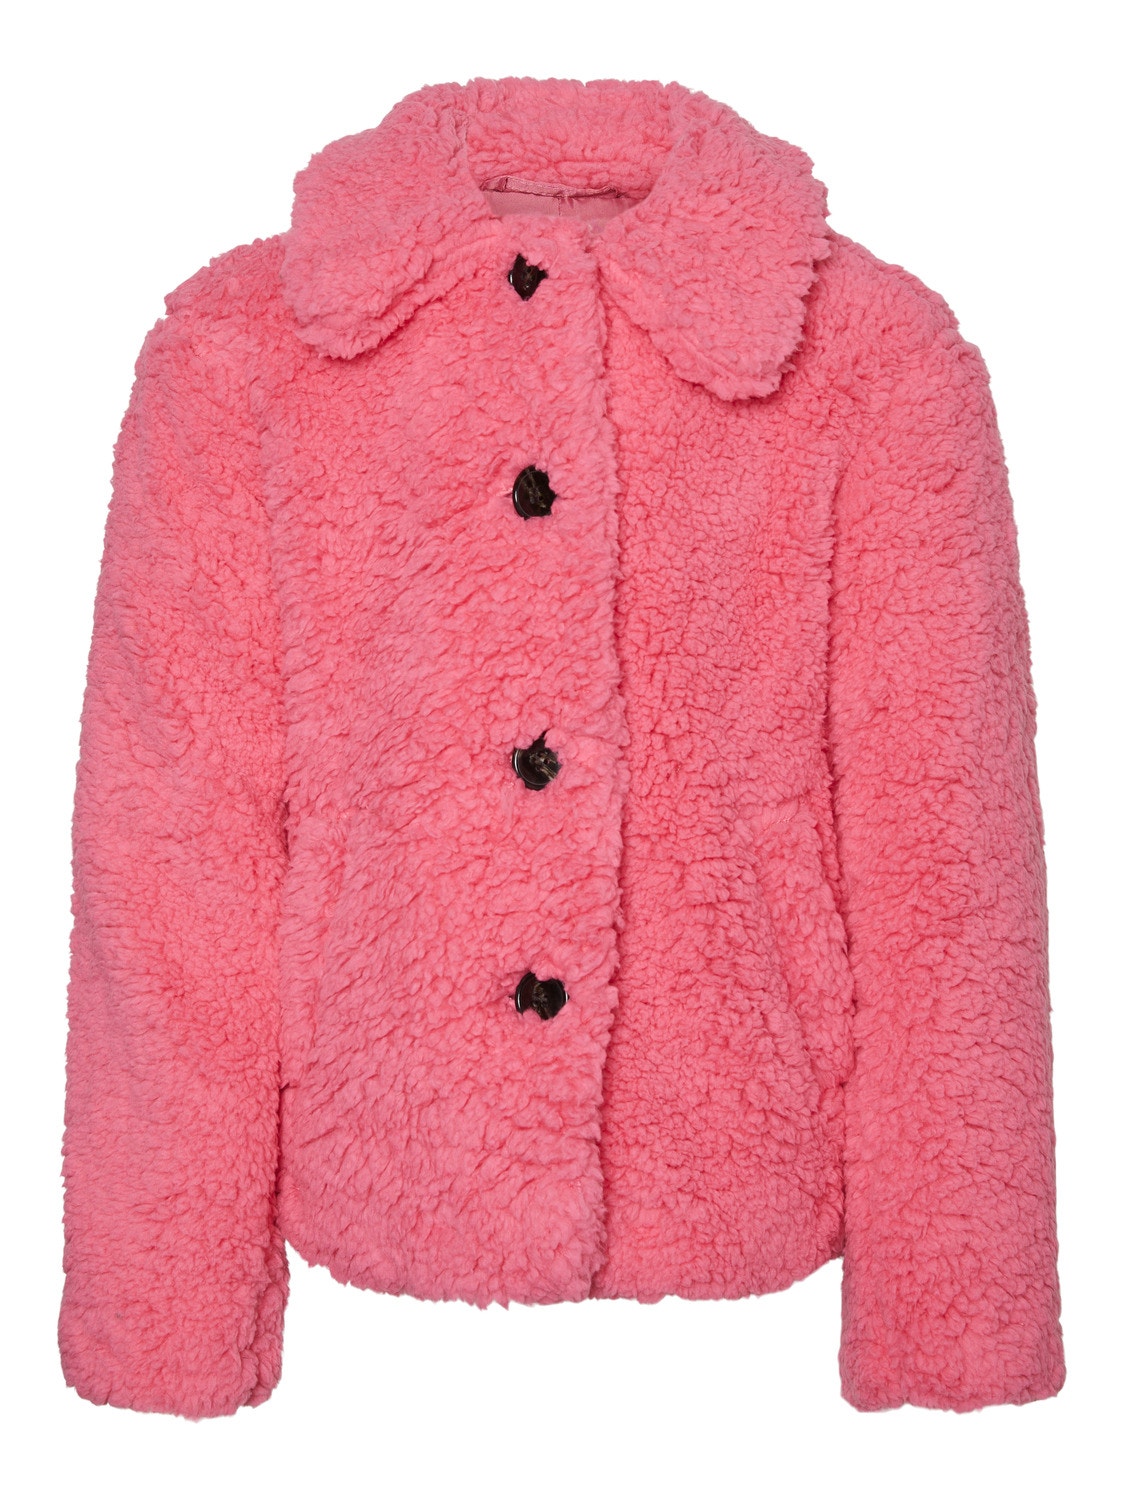 Vero Moda VMCOOPER Jacket -Hot Pink - 10271644